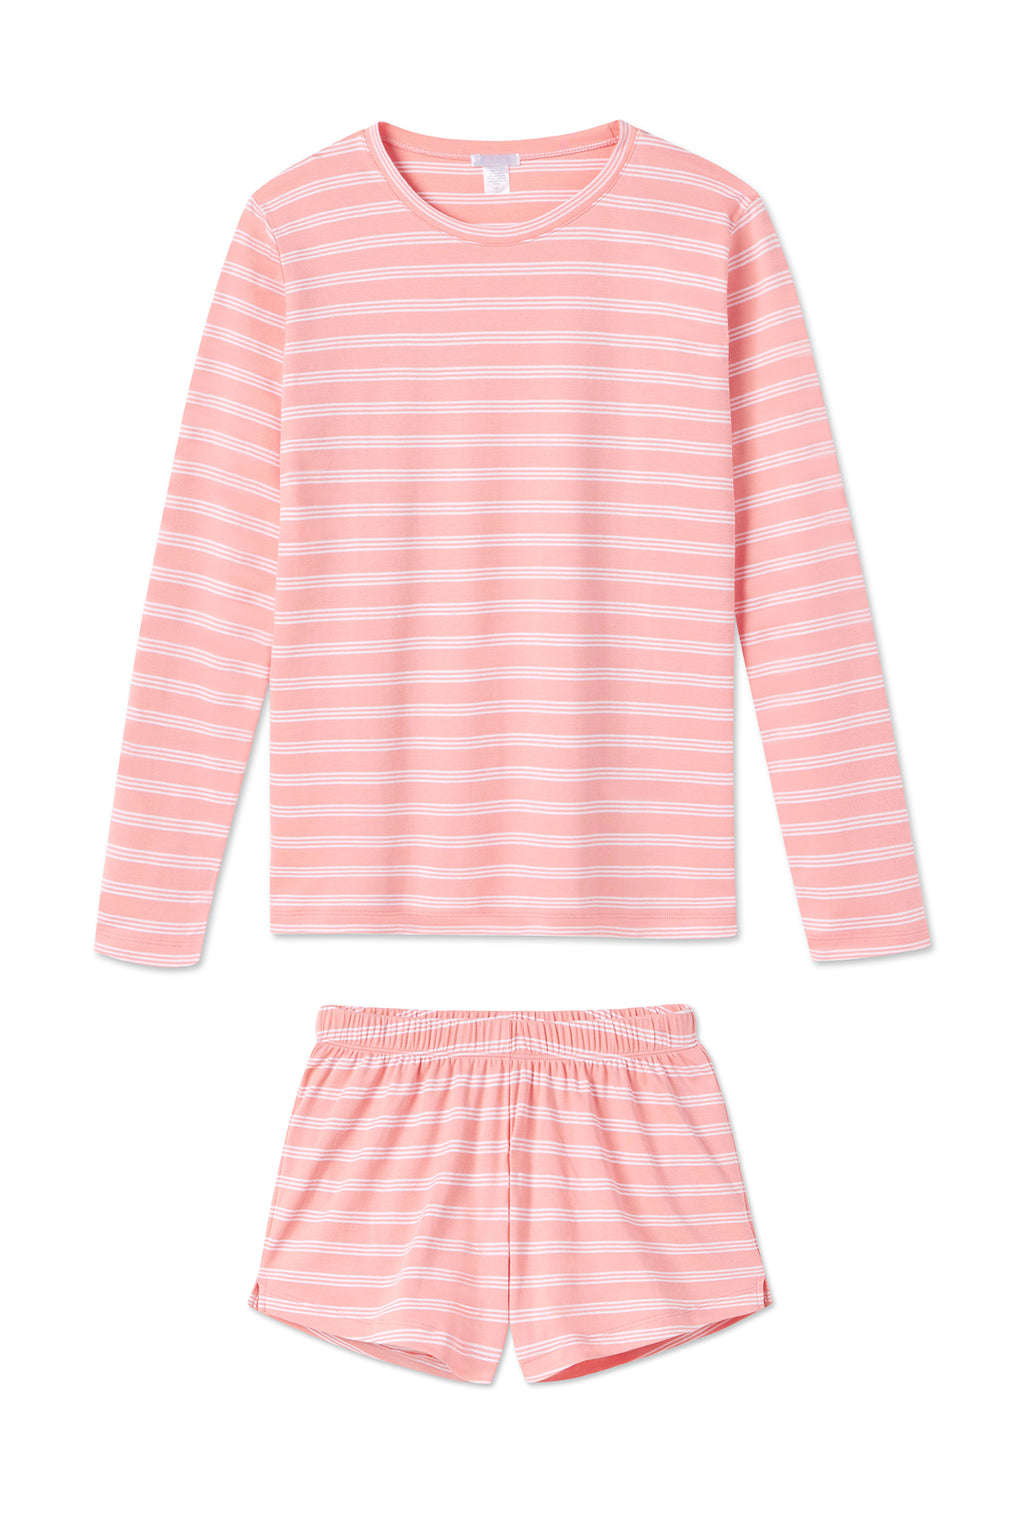 LAKE | Women | Pima Cotton Pajamas | Coral Stripe Long-Short Weekend Set